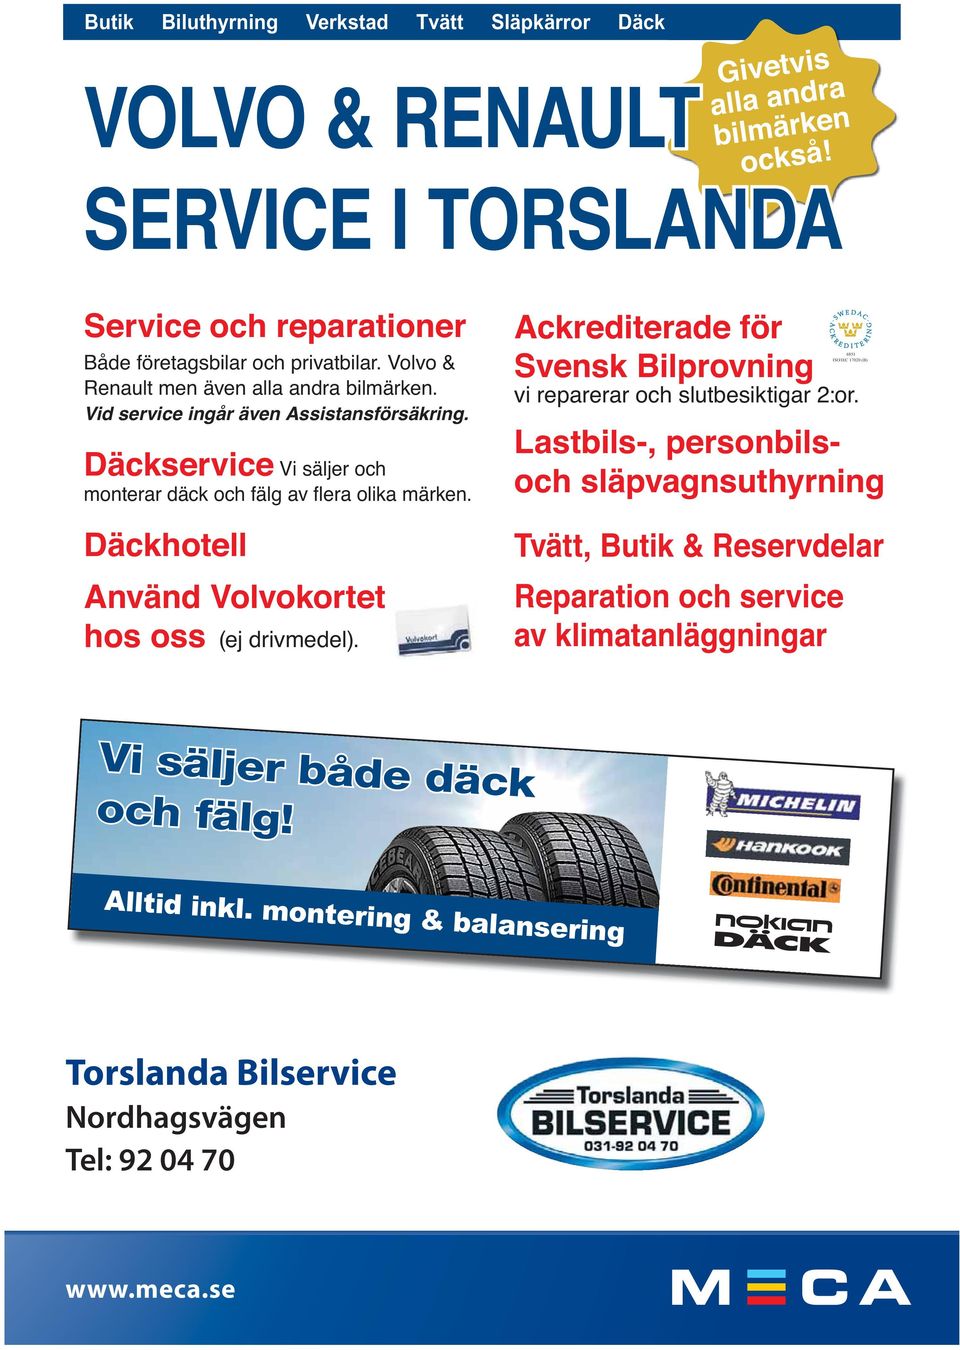 Däckservice Vi säljer och Ackrediterade för Svensk Bilprovning 6851 ISO/IEC 17020 (B) vi reparerar och slutbesiktigar 2:or.